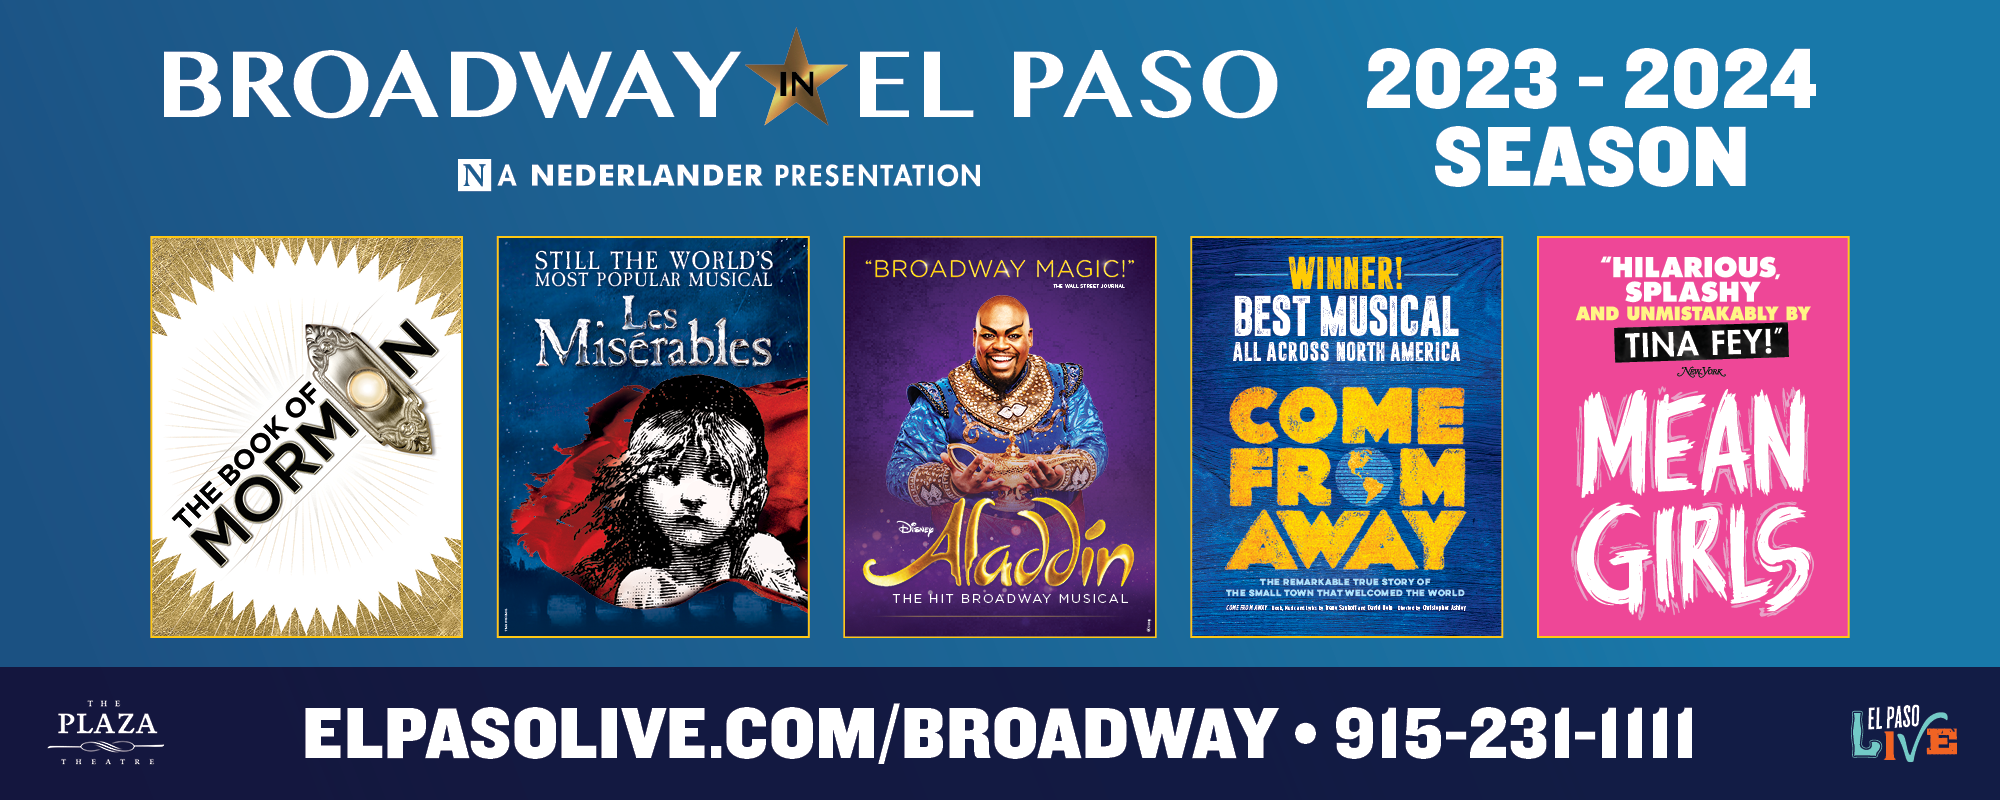 2023-24 Broadway in El Paso Season